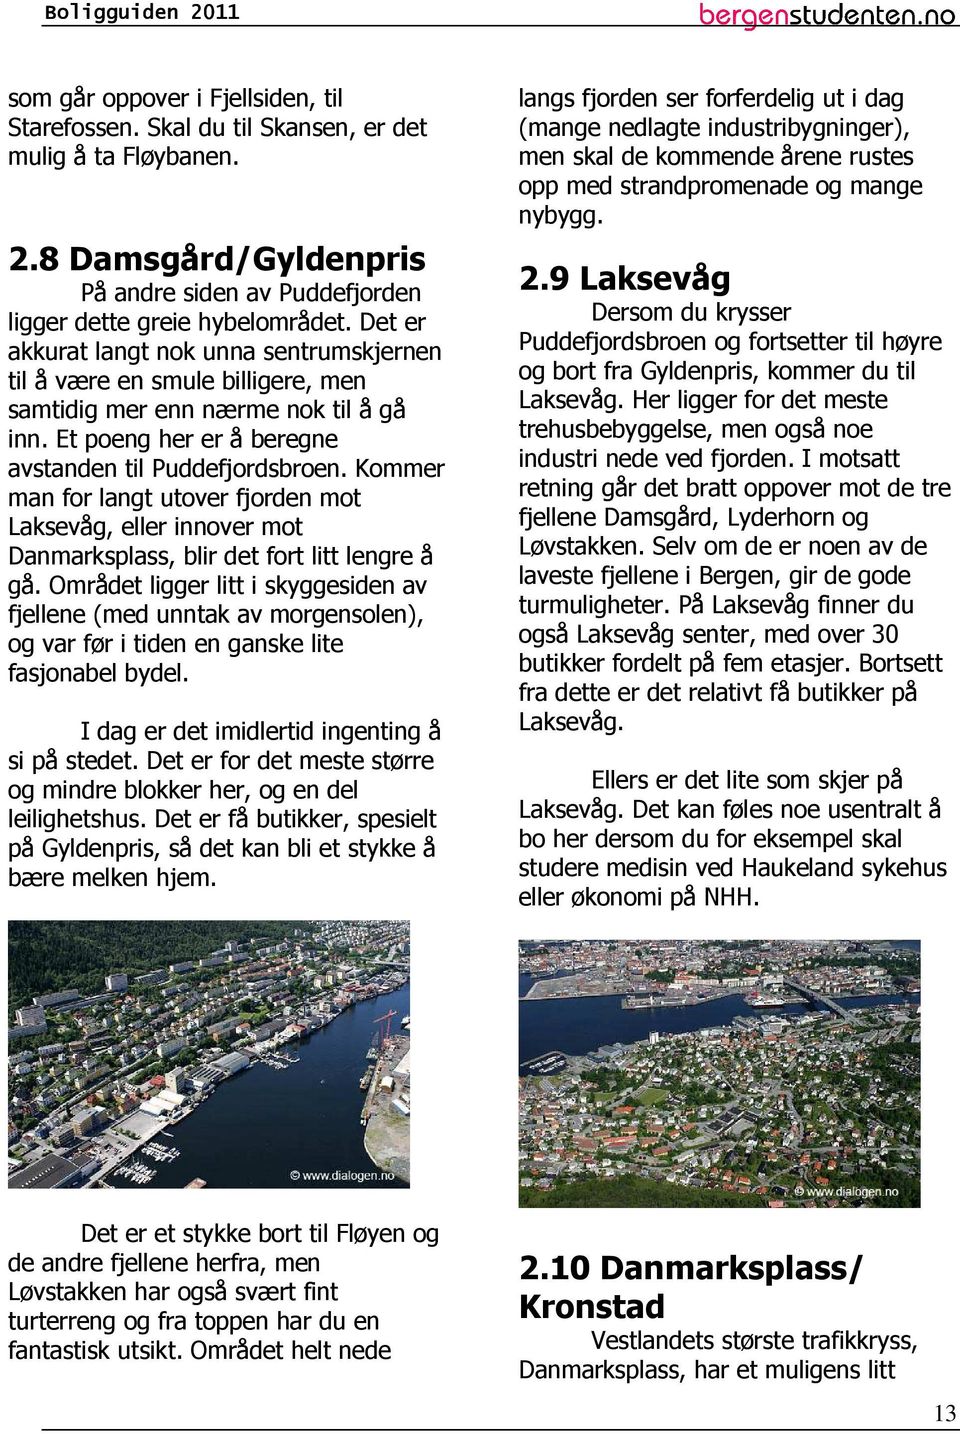 Kommer man for langt utover fjorden mot Laksevåg, eller innover mot Danmarksplass, blir det fort litt lengre å gå.